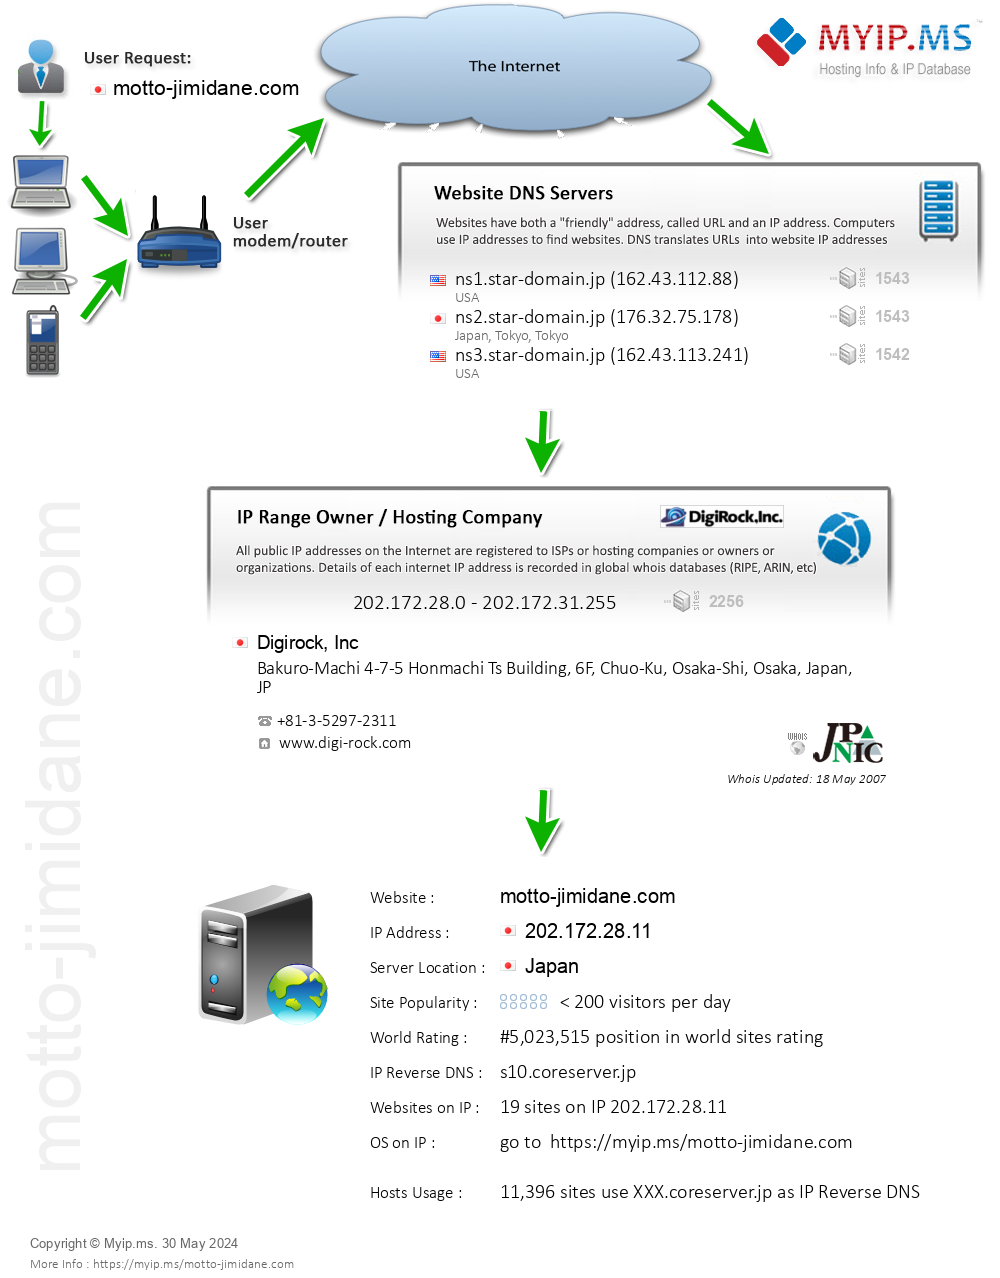 Motto-jimidane.com - Website Hosting Visual IP Diagram